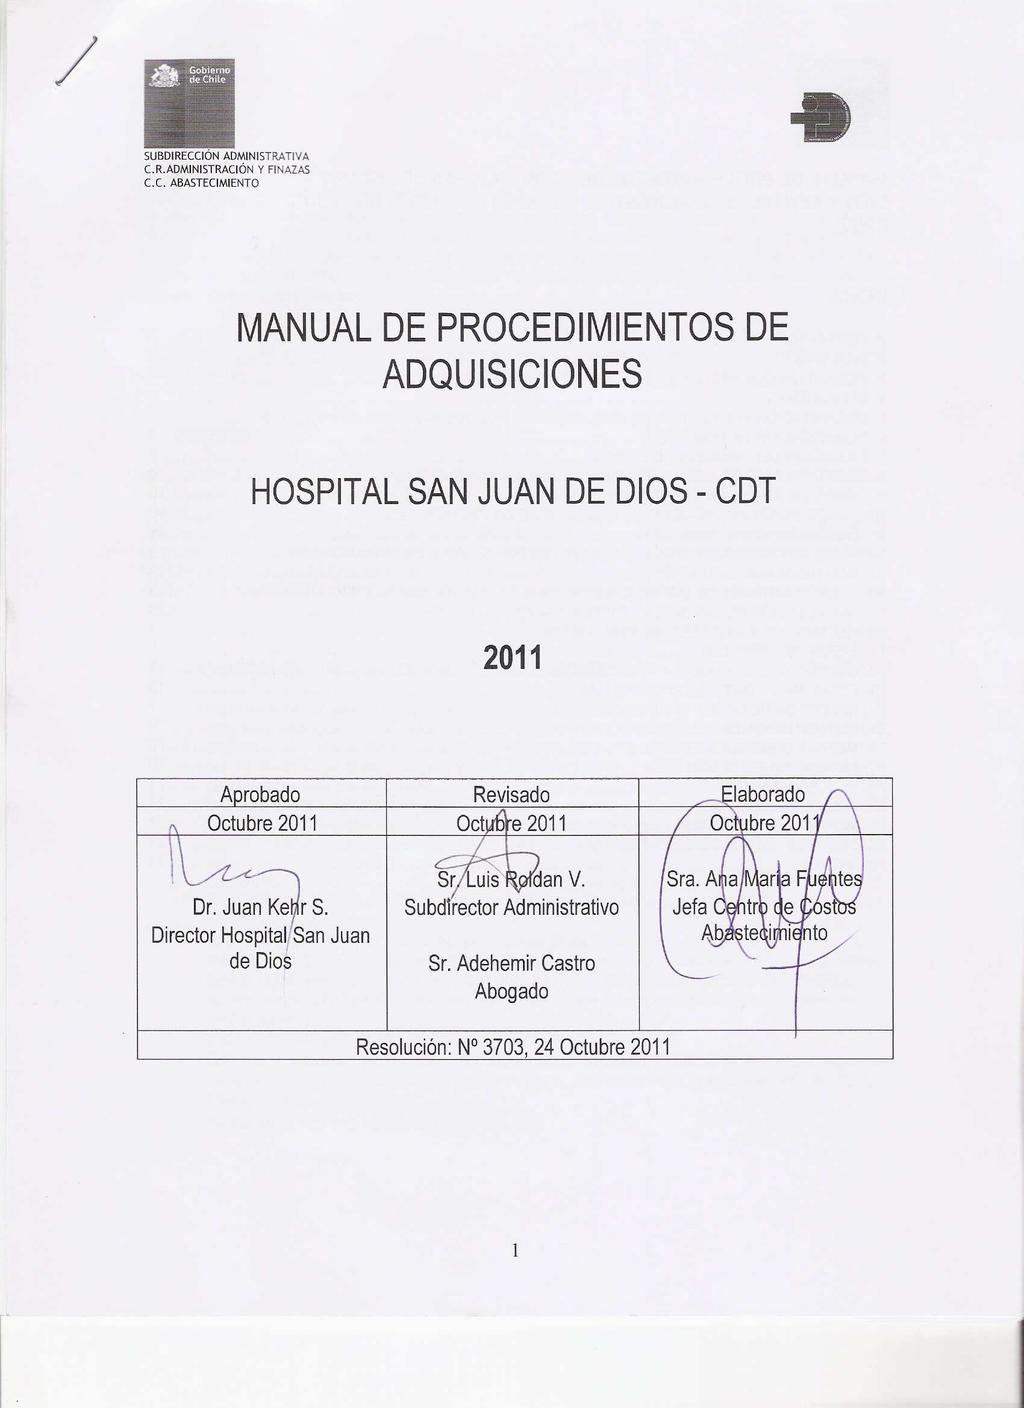 SUBDIRECCIÓN ADMINISTRATIVA C.R.ADMINISTRACIÓN Y FINAZAS C.C. ABASTECIMIENTO MANUAL DE PROCEDIMIENTOS DE ADQUISICIONES HOSPITAL SAN JUAN DE DIOS - CDT 2011 Aprobado Revisado Elaborado Octubre 2011 Octubre 2011 Octubre 2011 Dr.